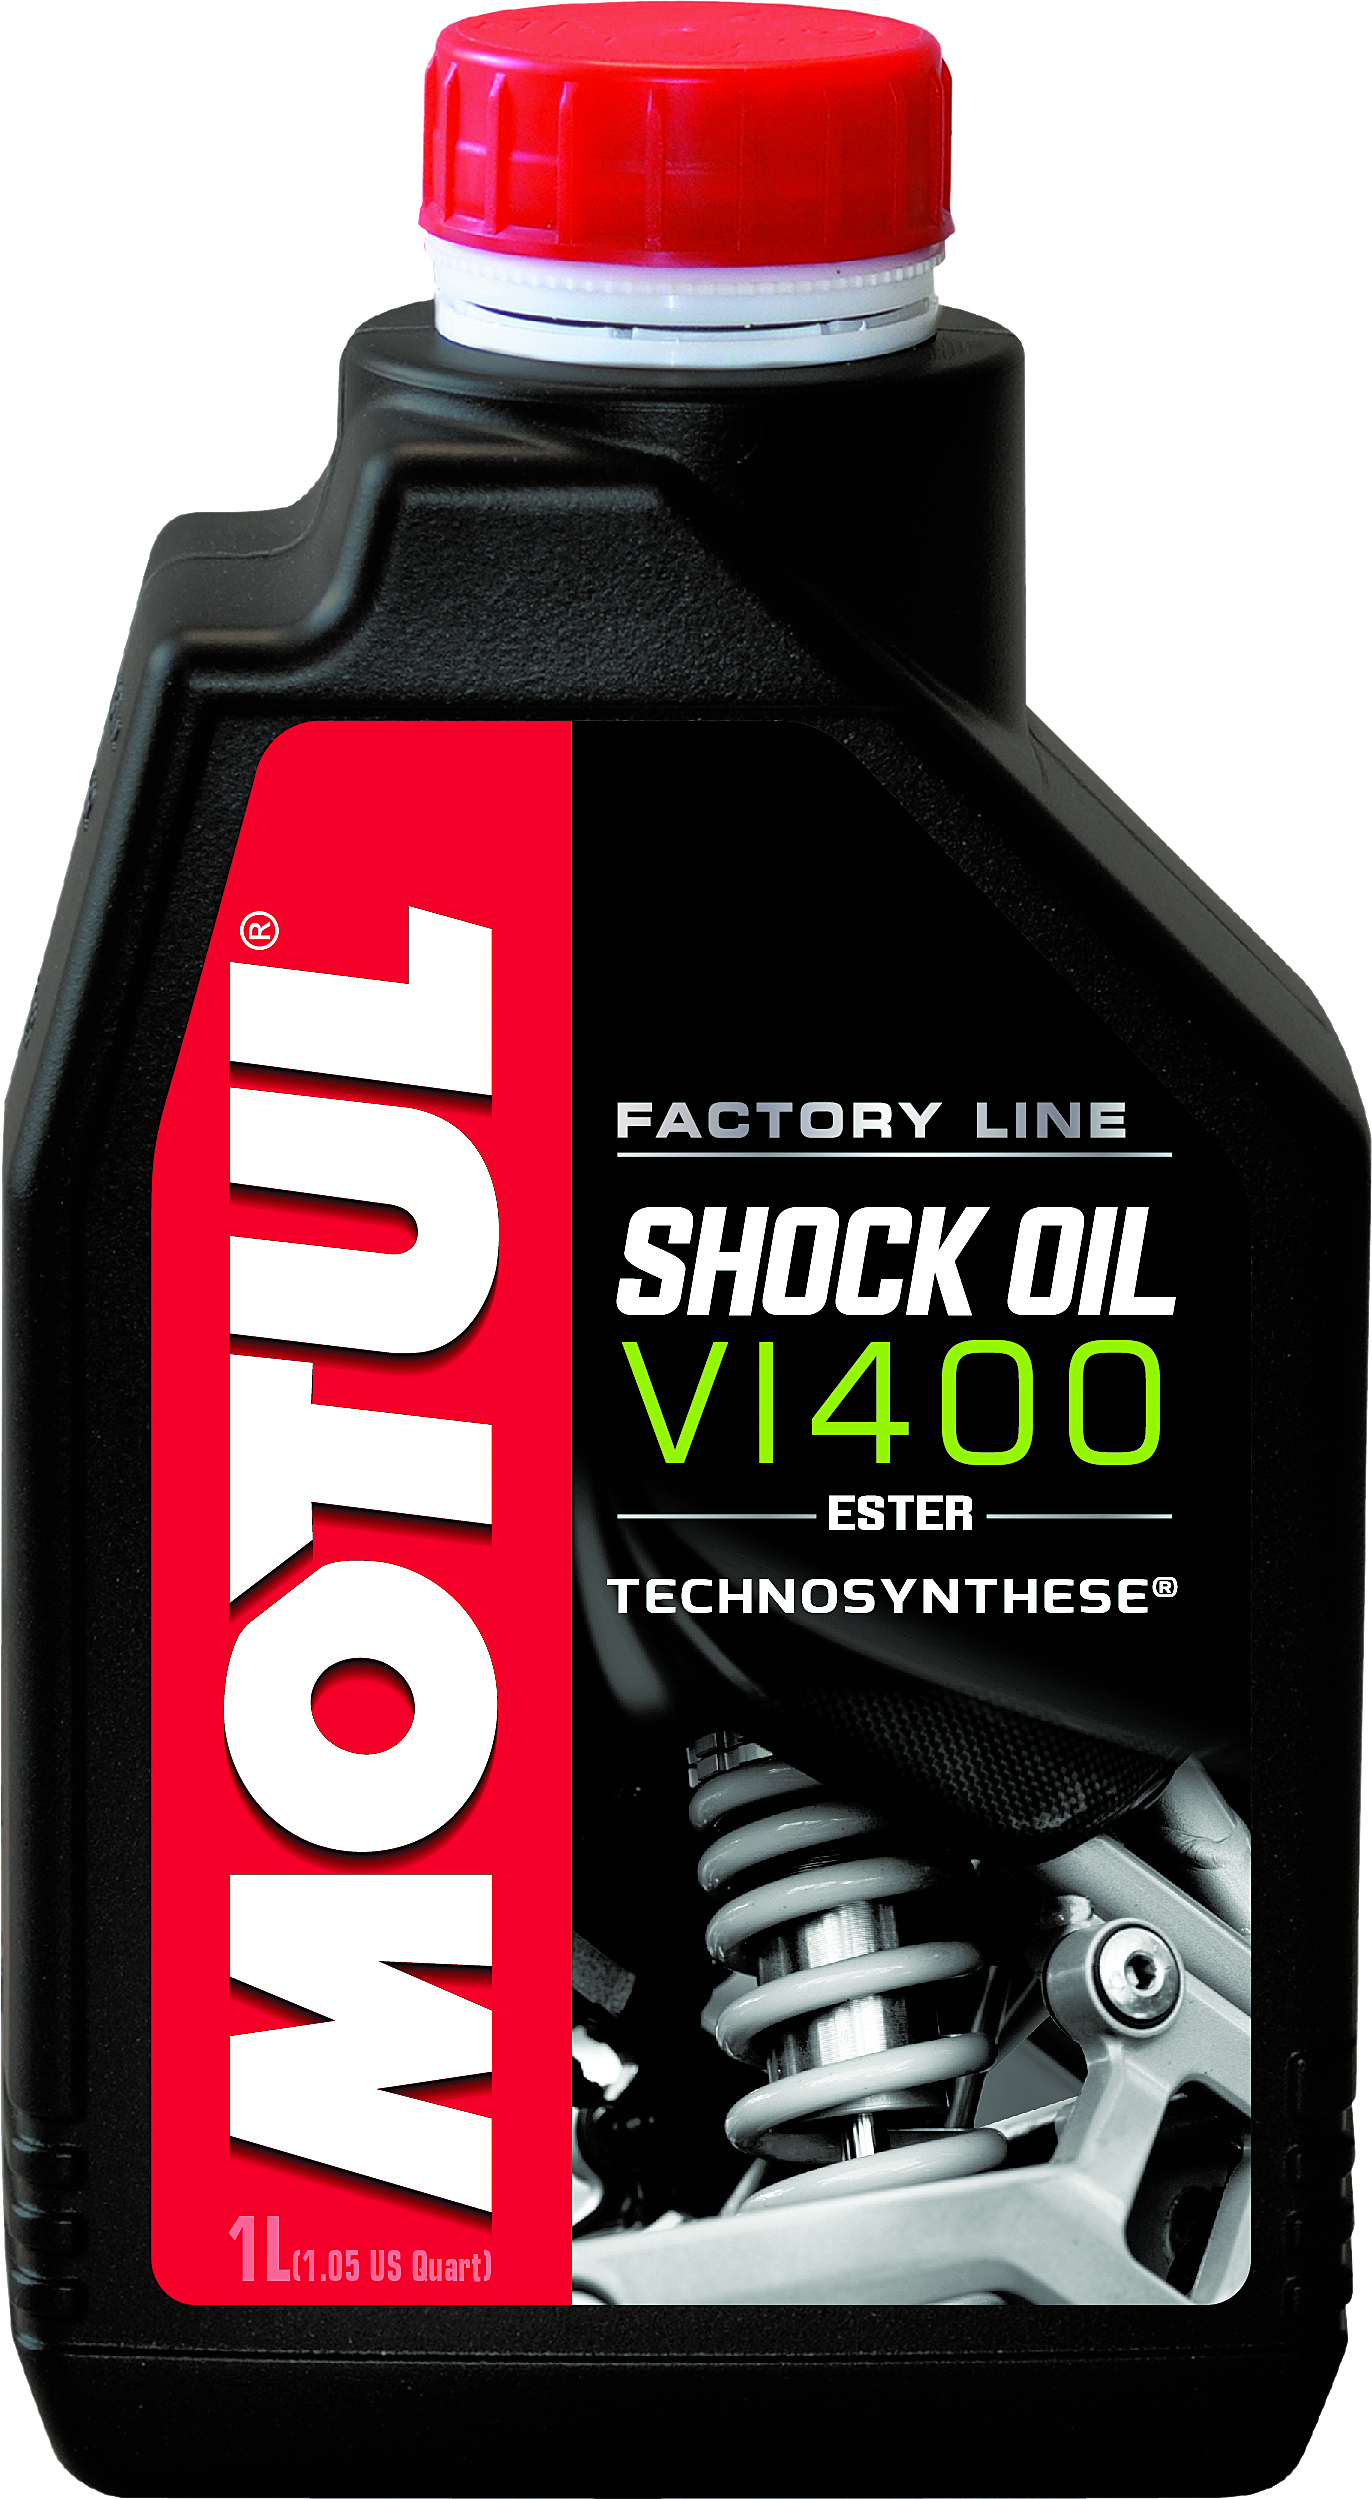 Motul - Shock Oil Factory Line V1400 1 L - 105923